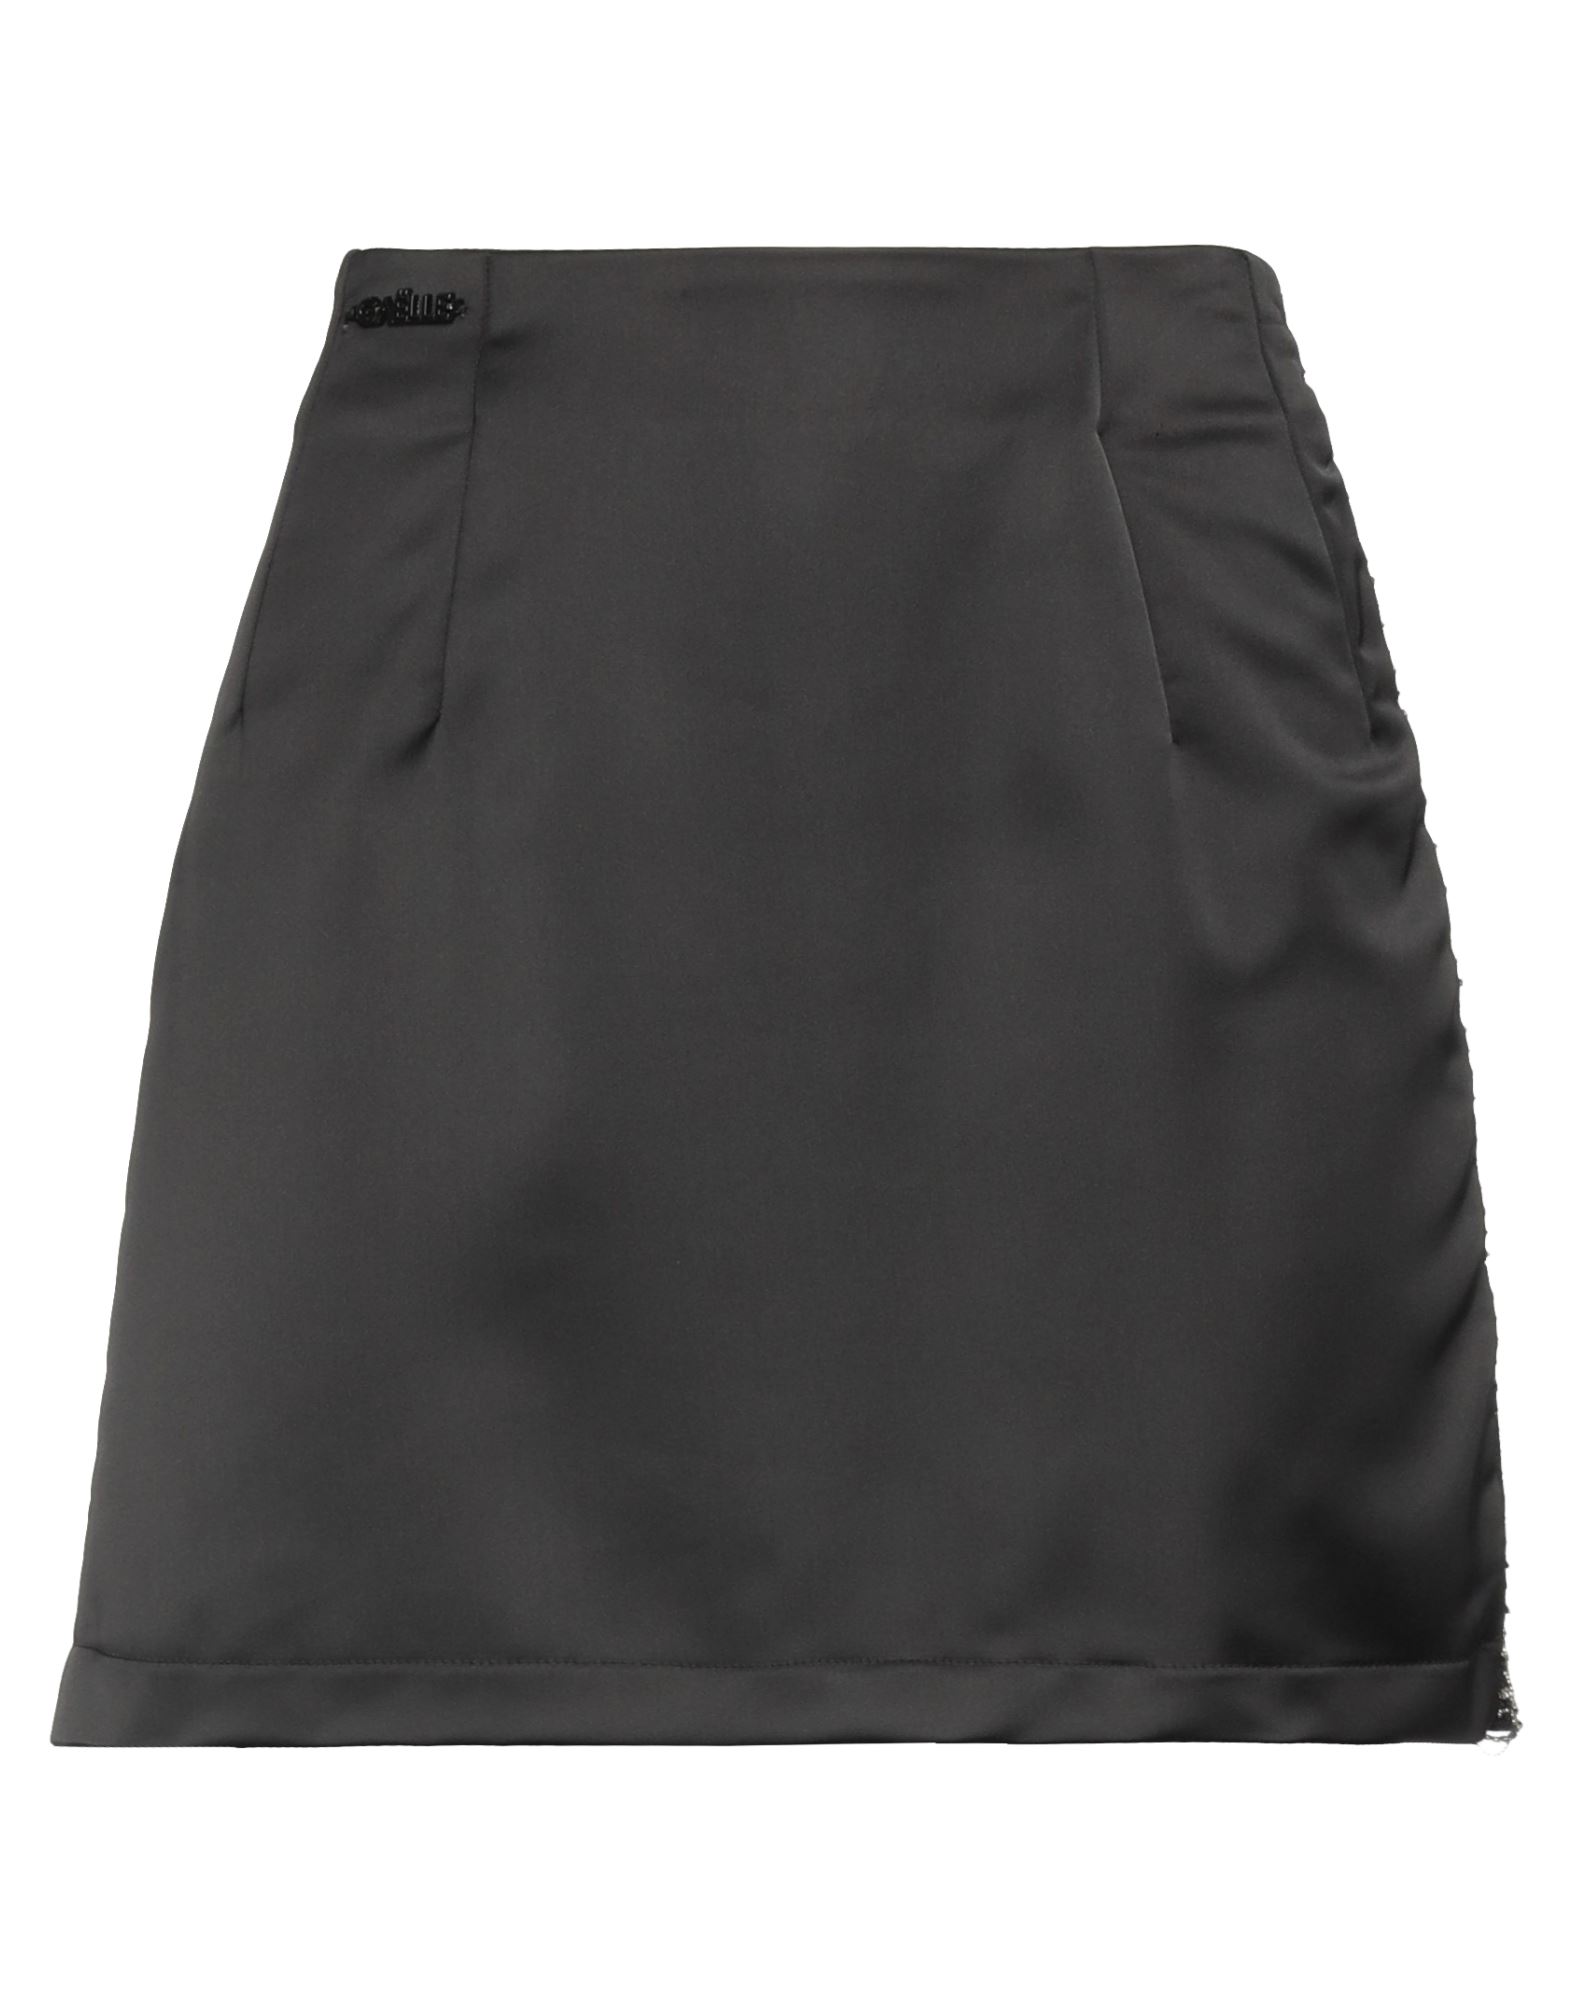 Gaelle Paris Mini Skirts In Black